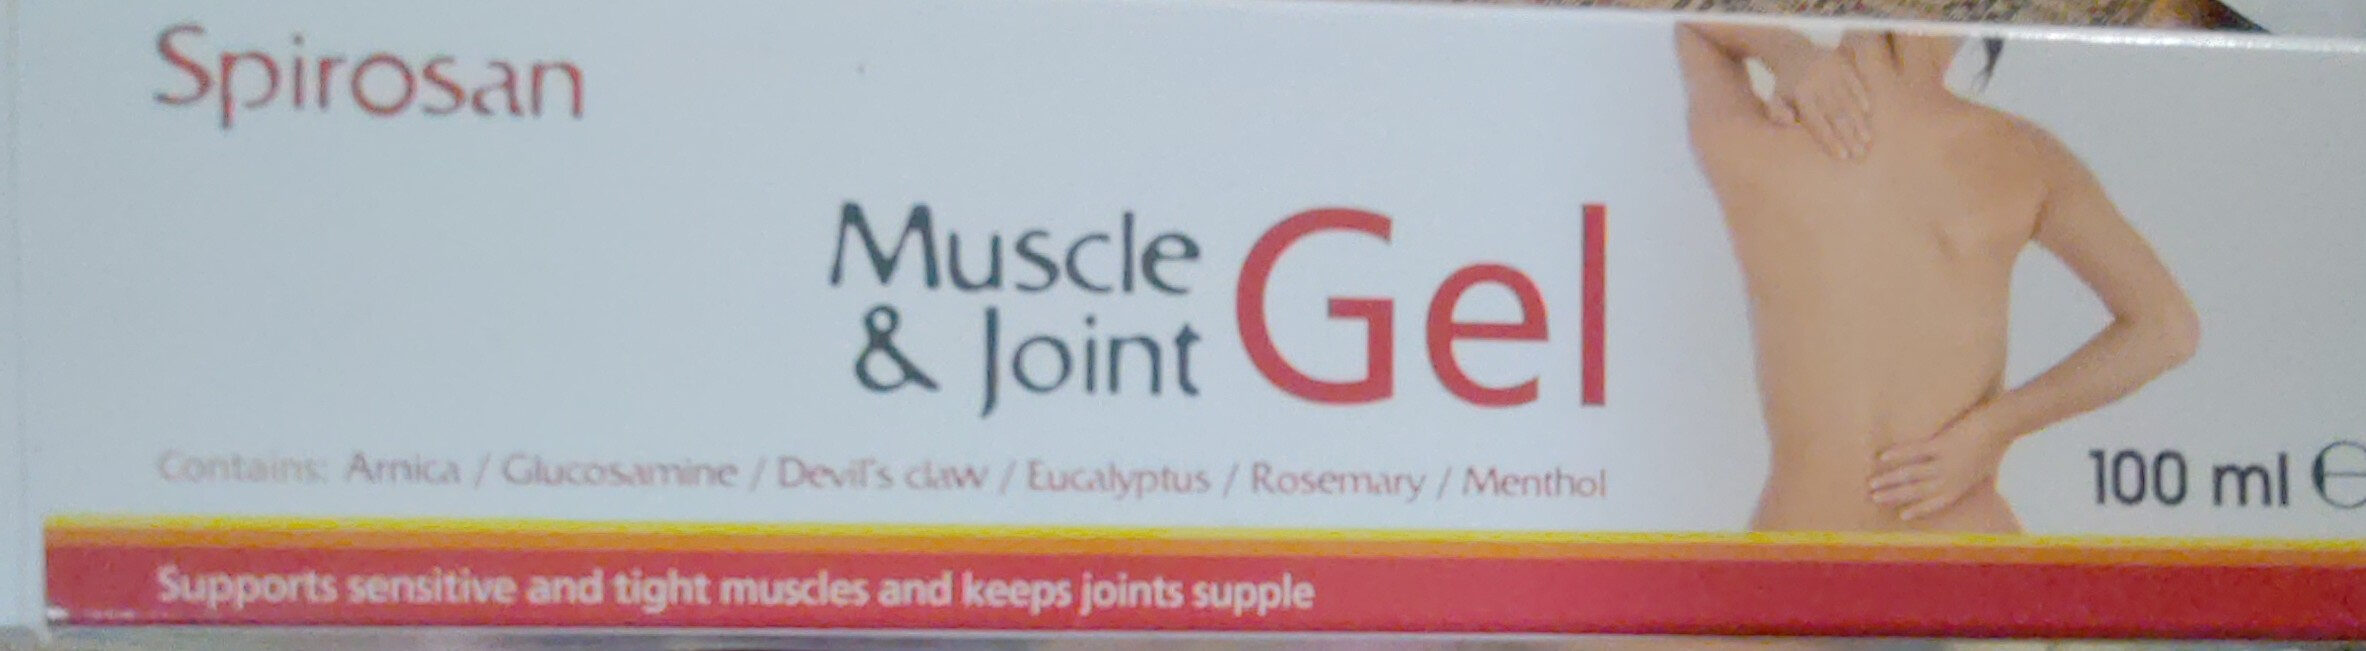 Muscle & joint gel - Produit - fr